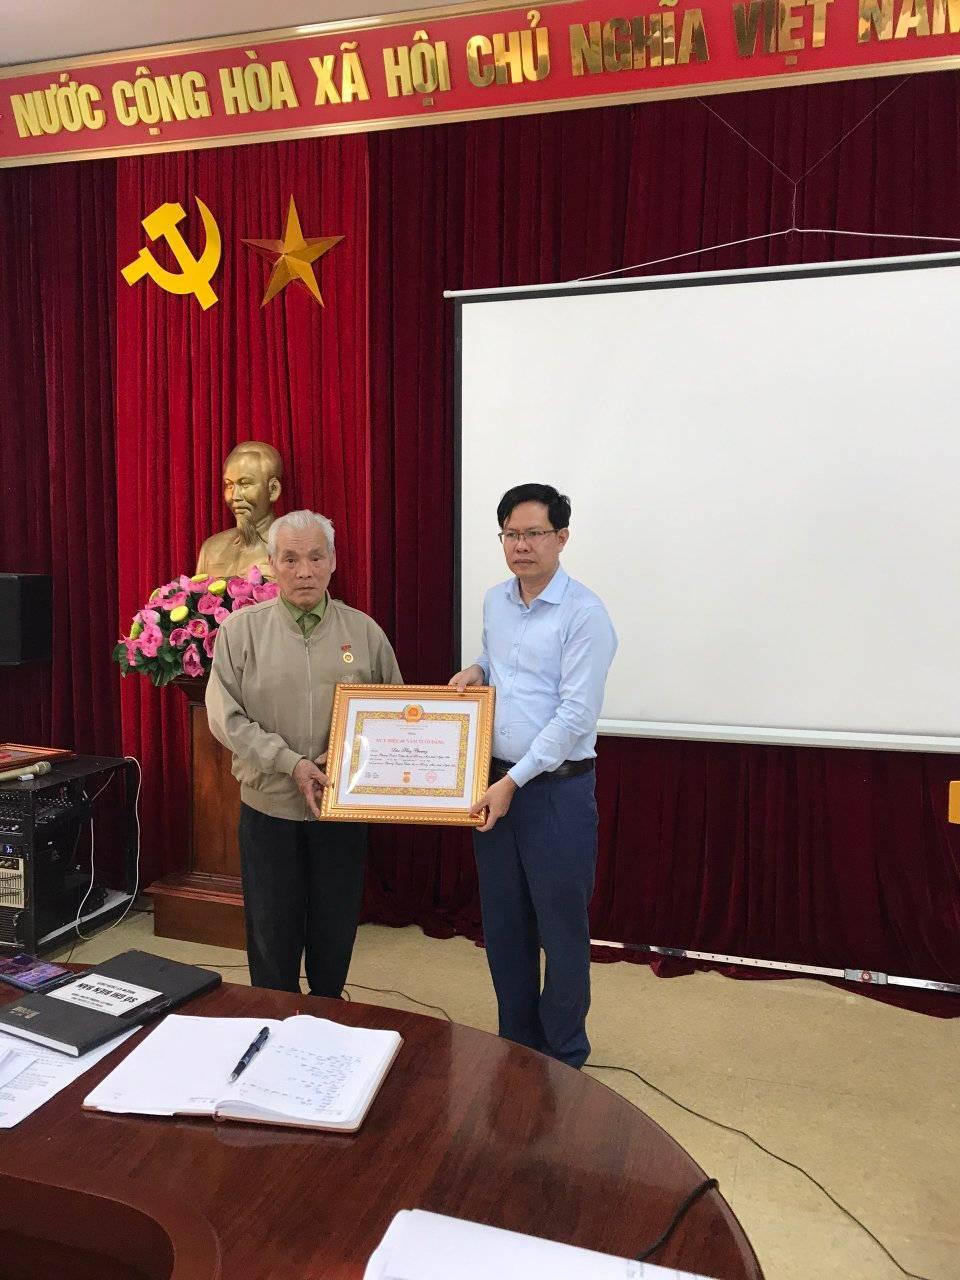 Đảng ủy phường Quỳnh Thiện tổ chức Lễ Trao Huy hiệu đảng cho đảng viên đợt 03/02/2021